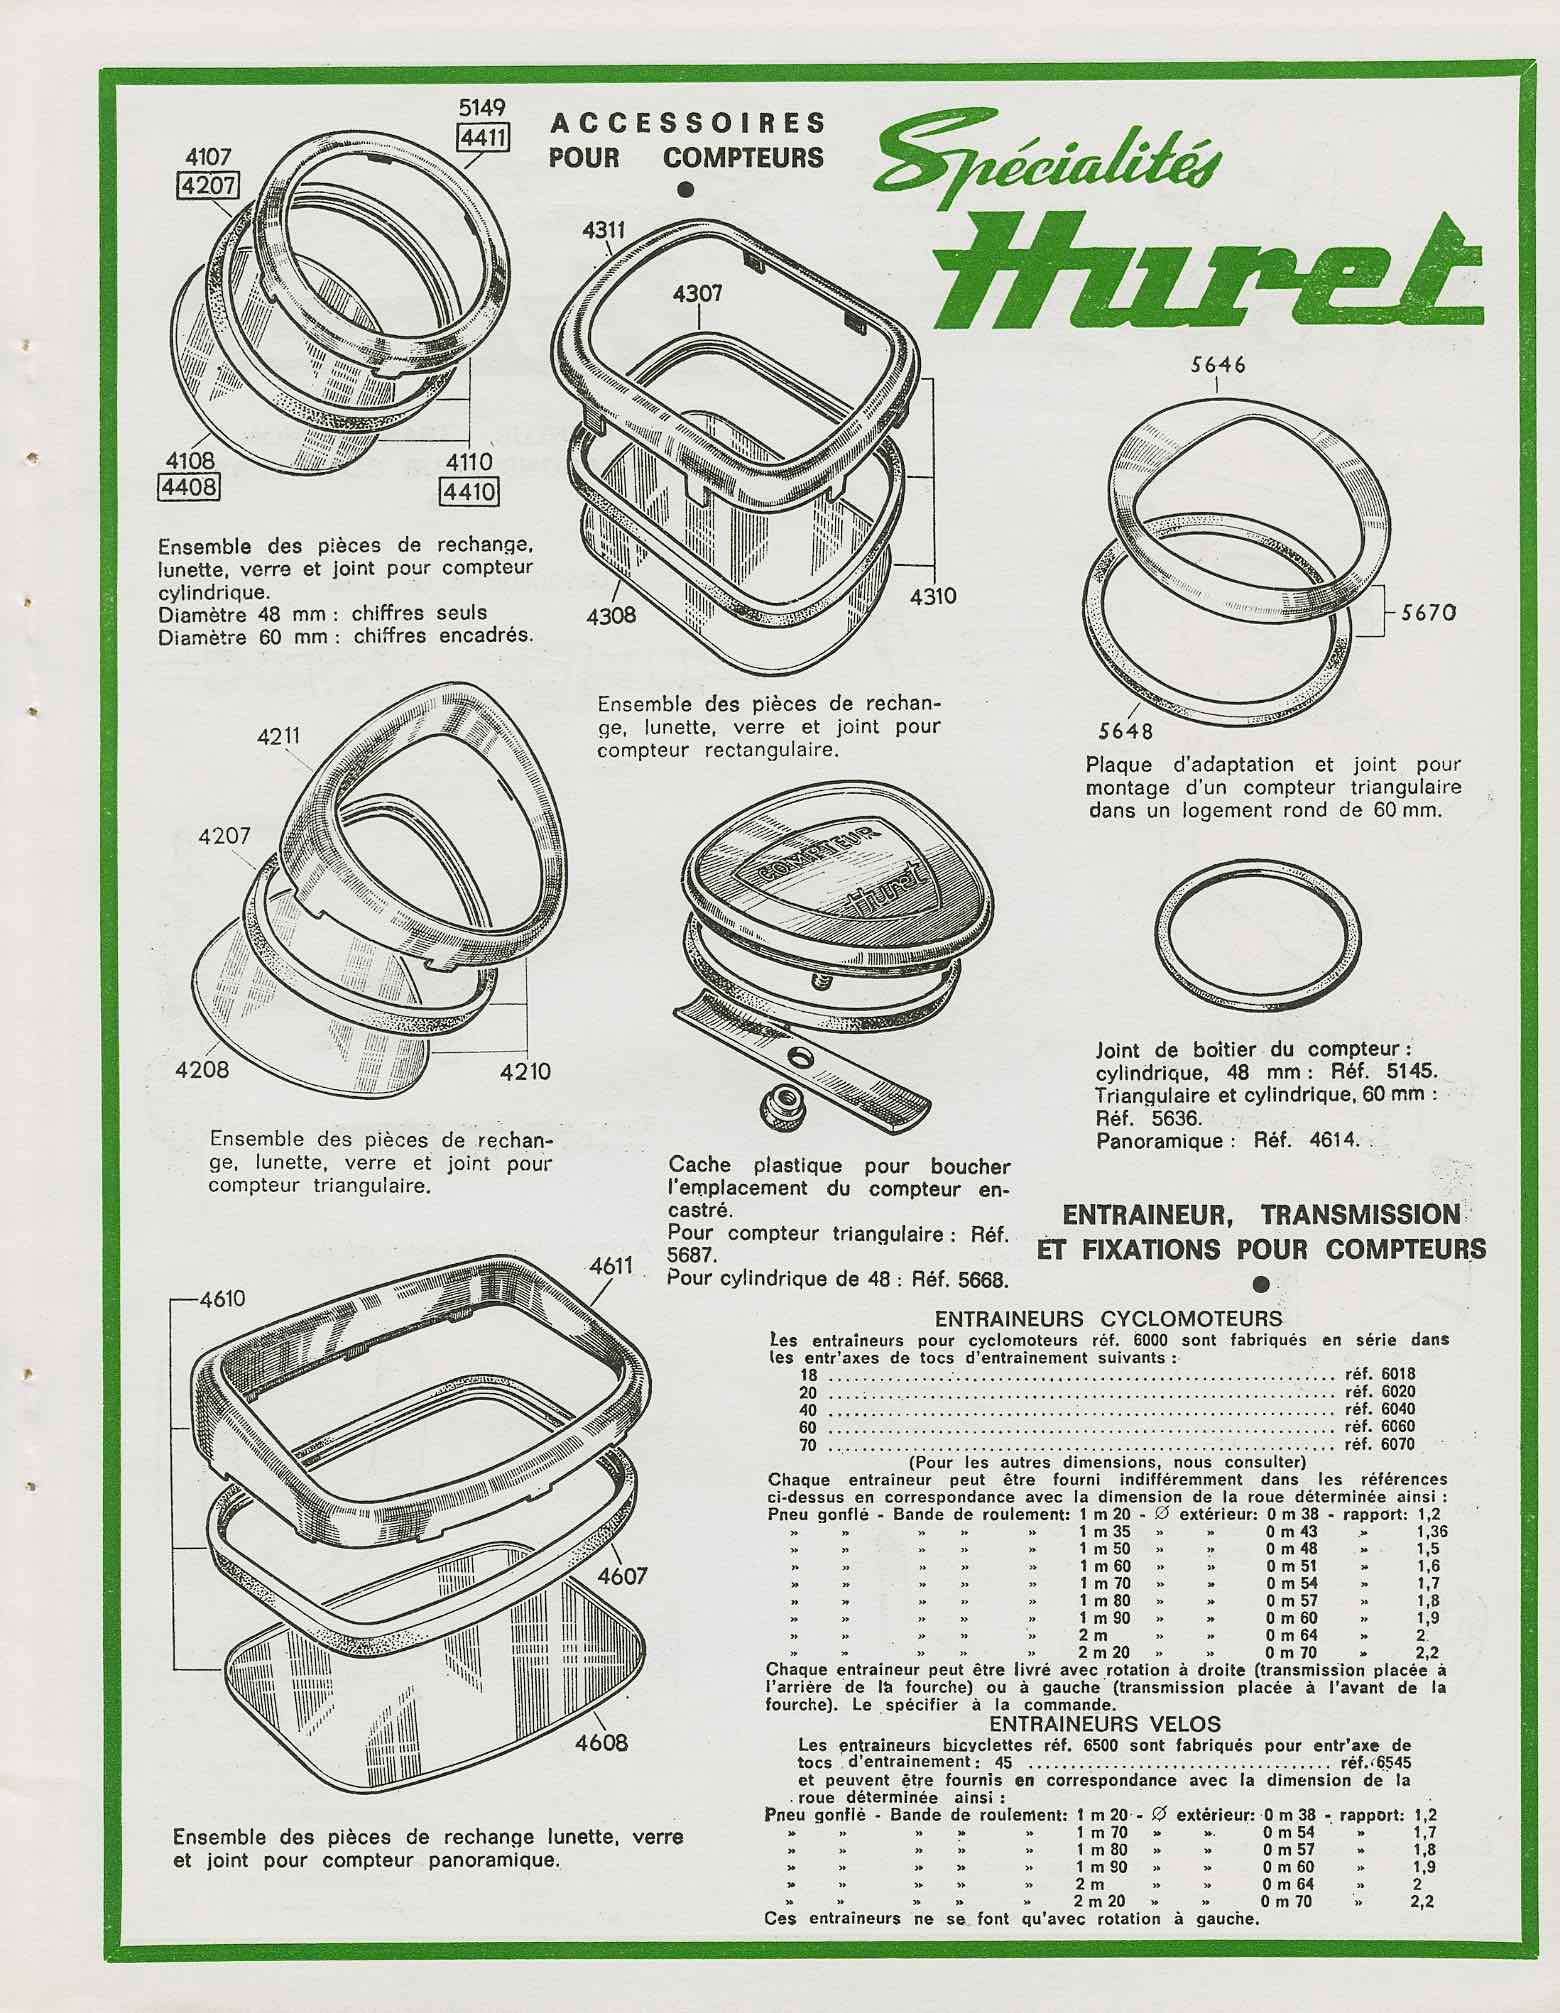 Huret Accessoires de Haut Qualite - 1968 scan 13 main image